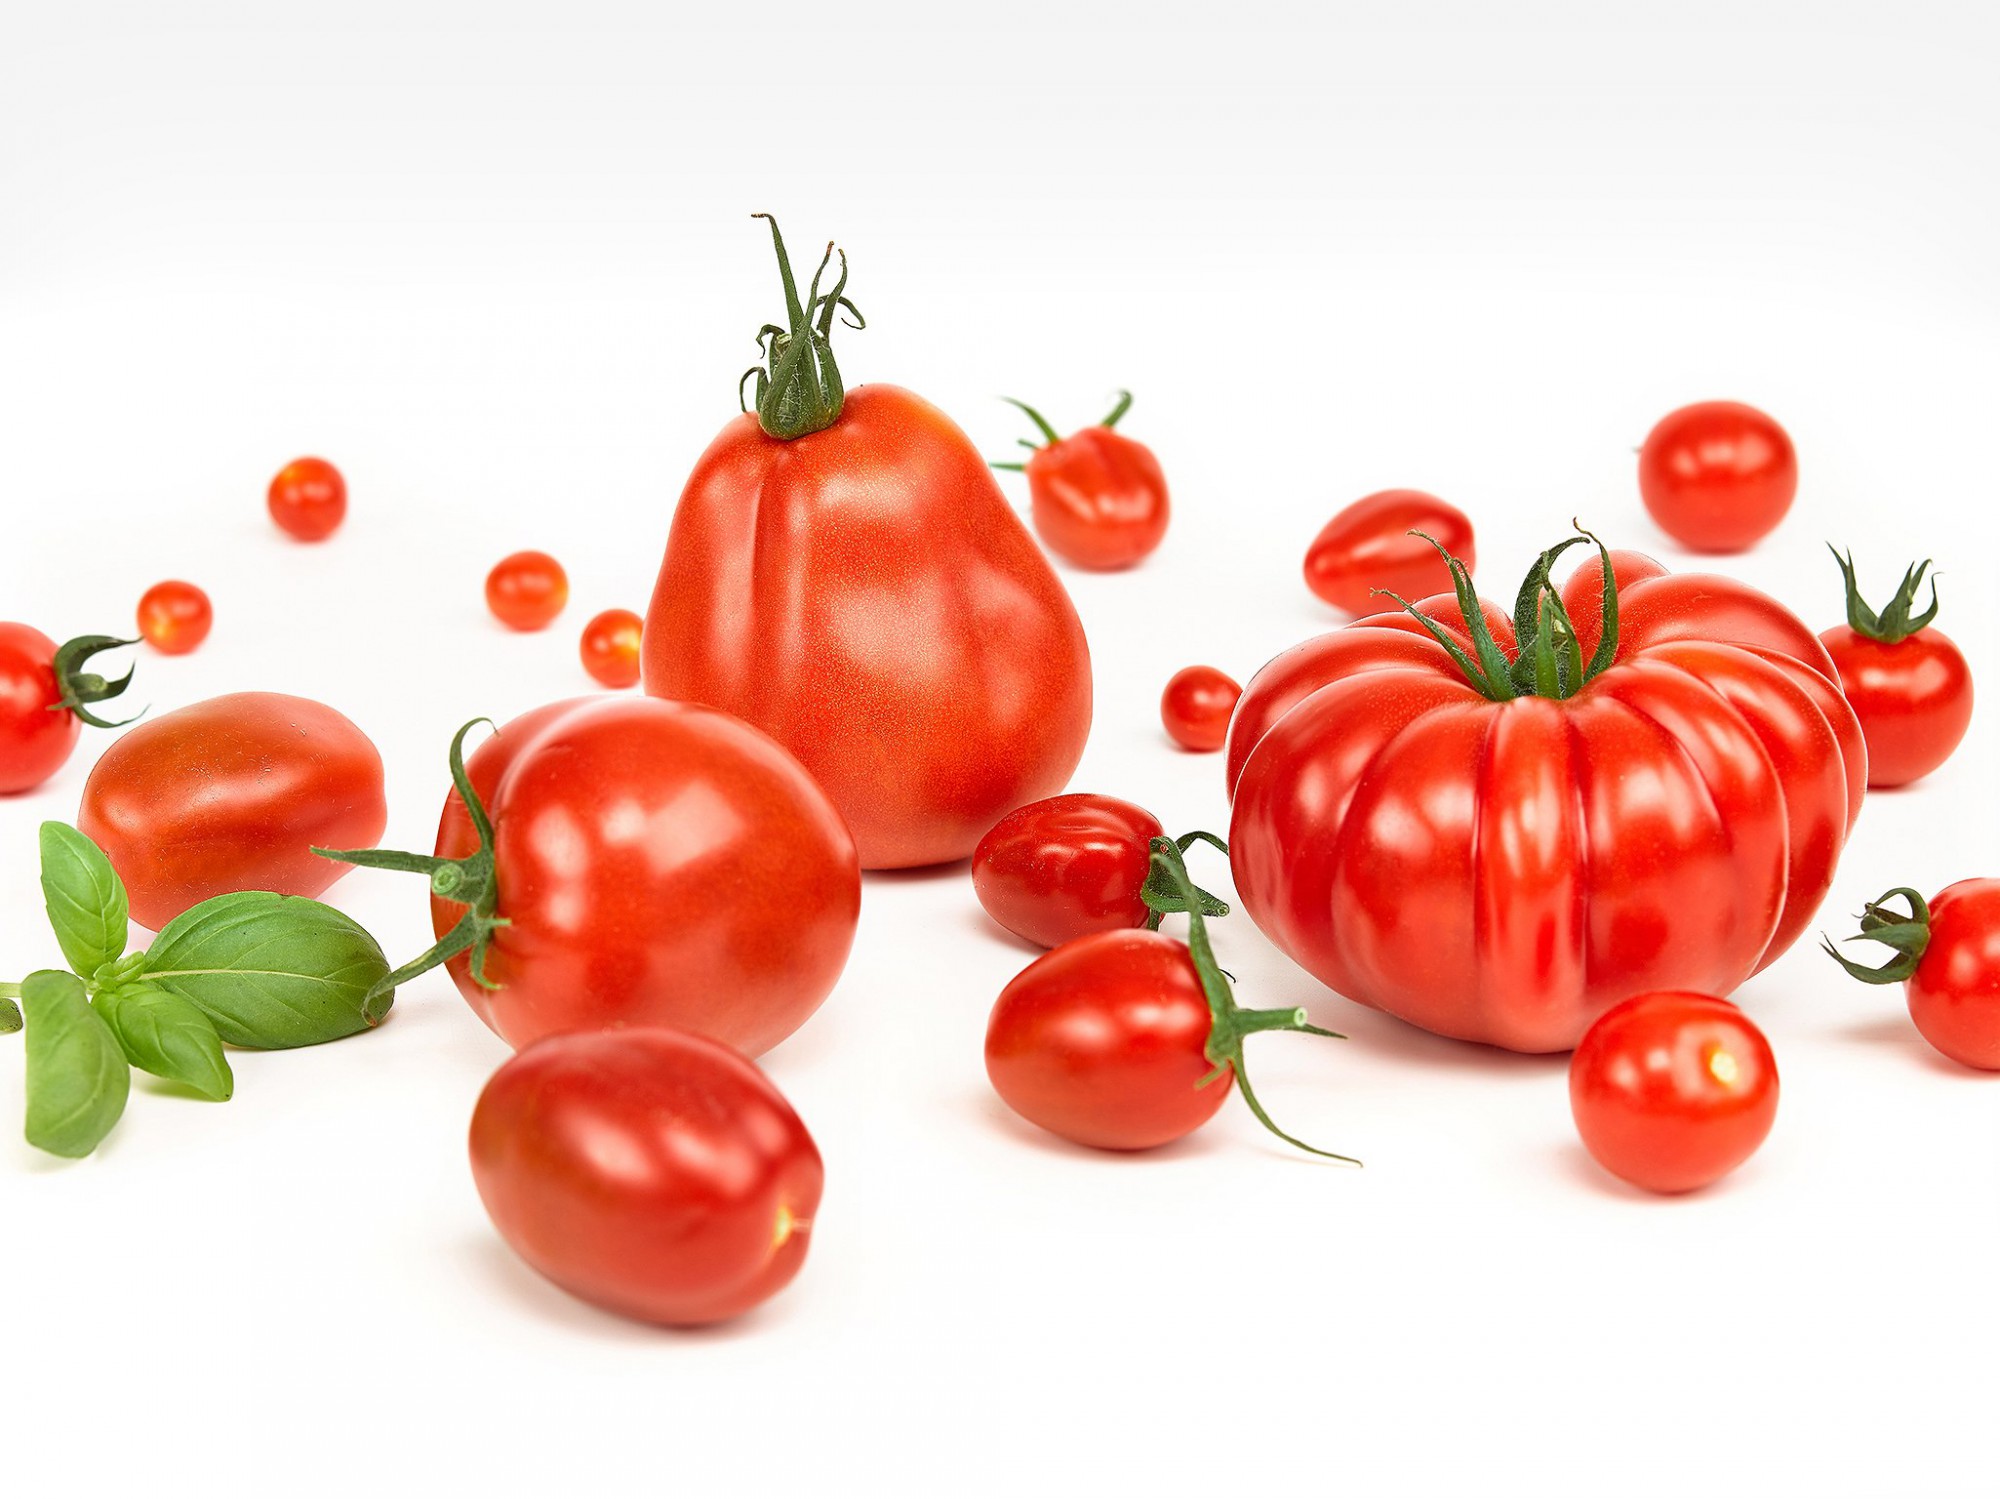 Afbeelding: Food fotografie assortiment tomaten voor Stoffels Tomaten, studio fotografie.